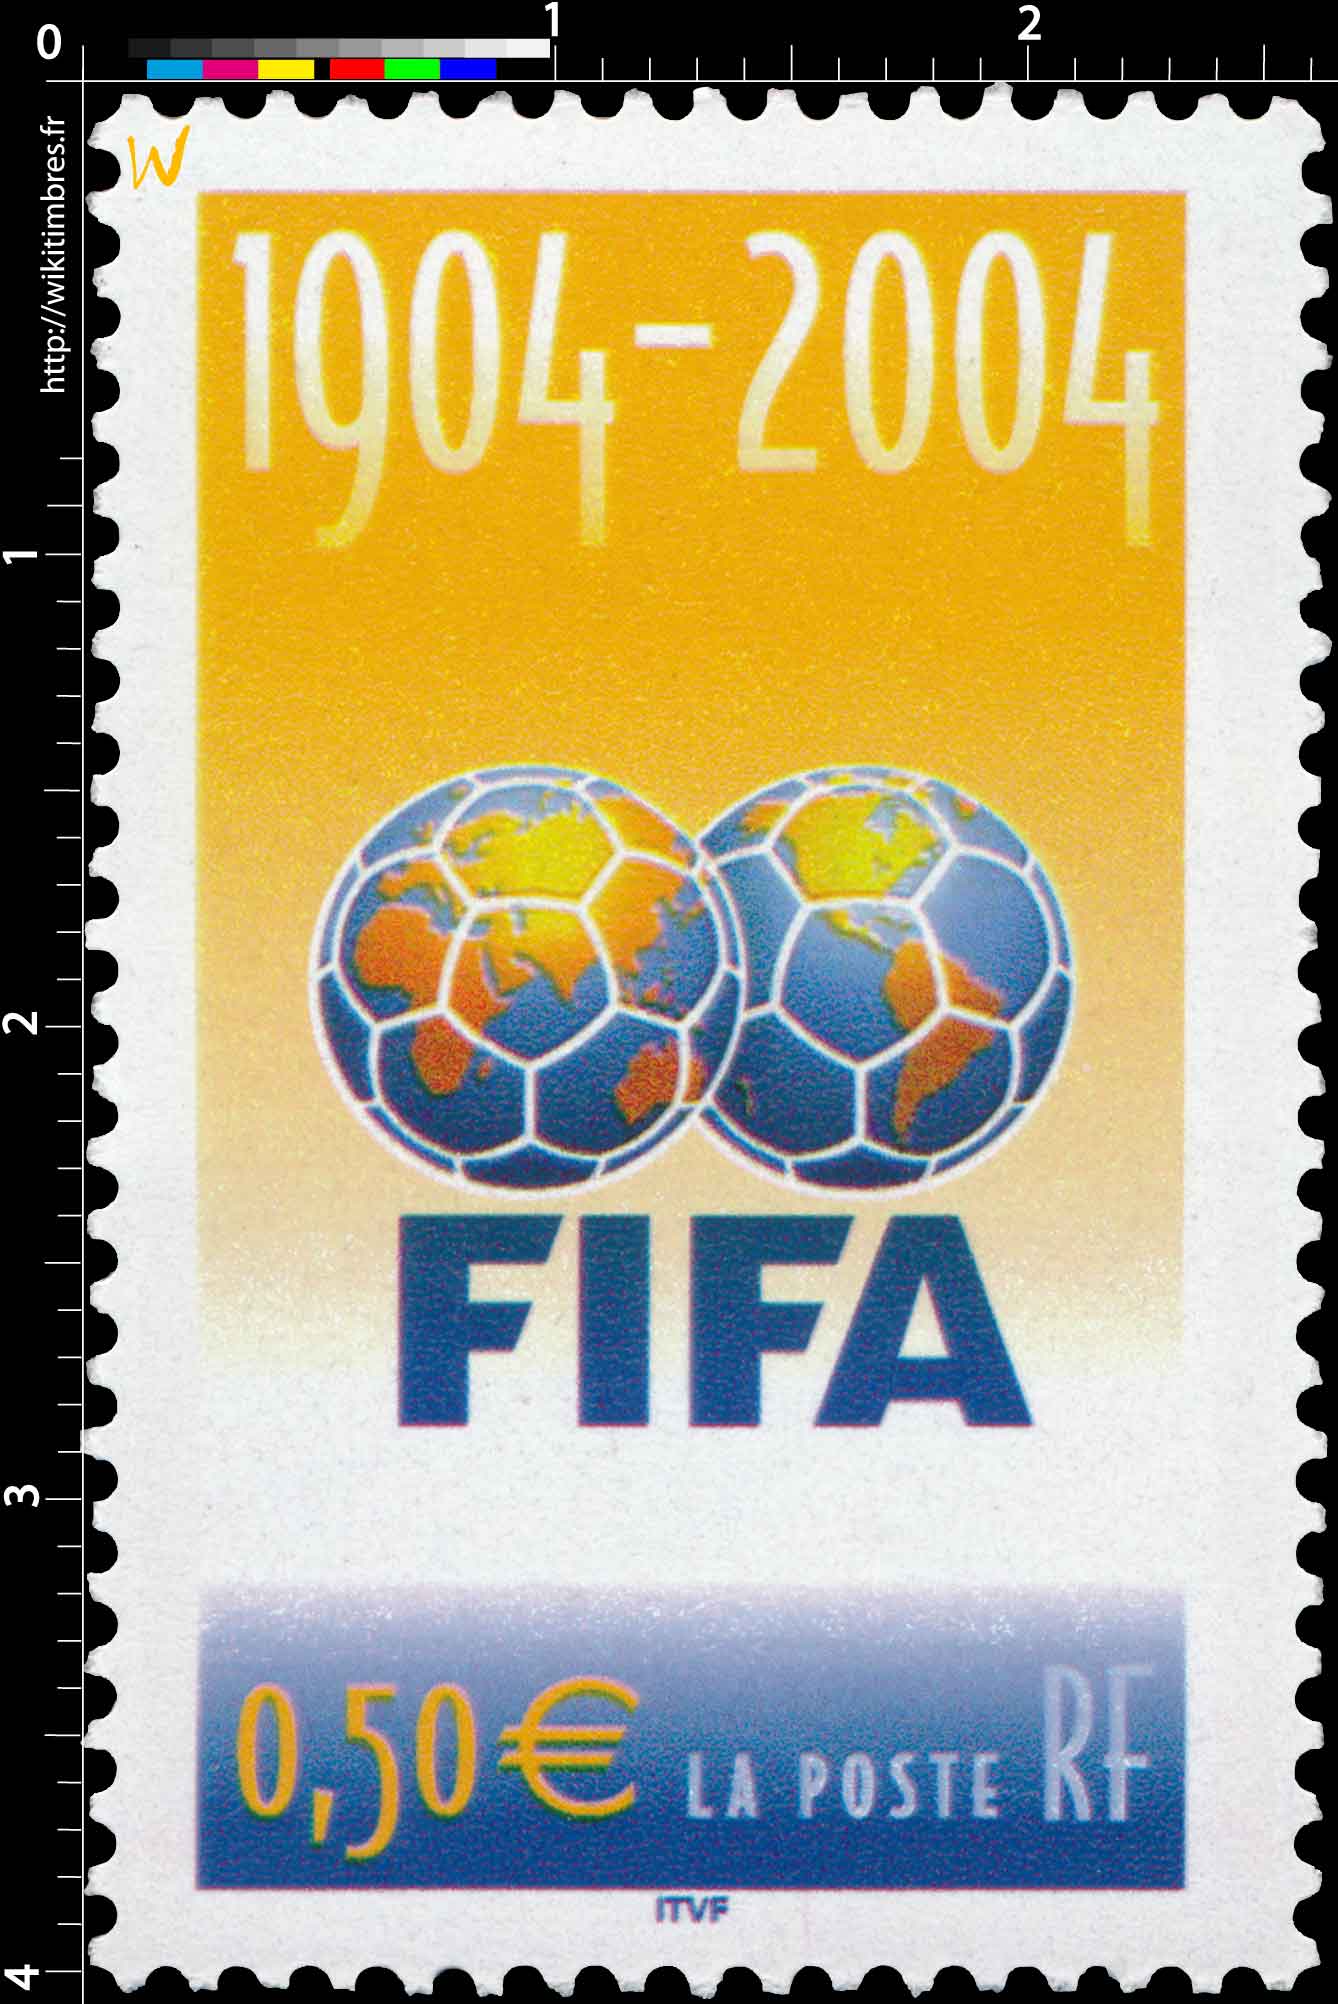 FIFA 1904-2004